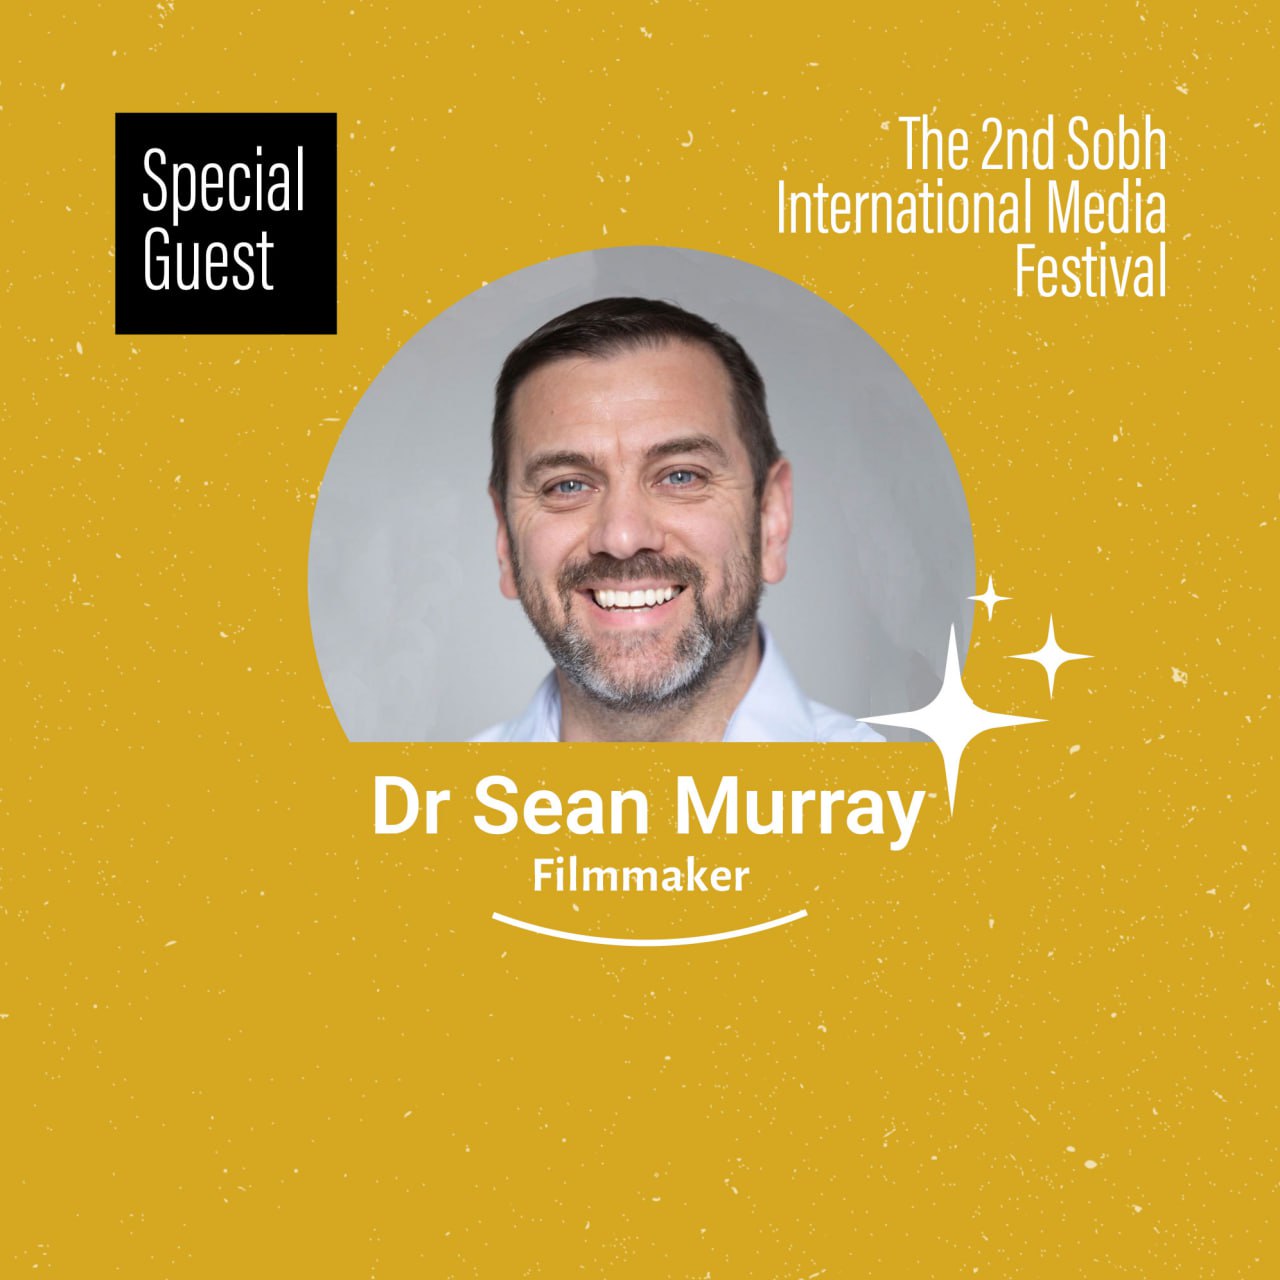 Dr Sean Murray